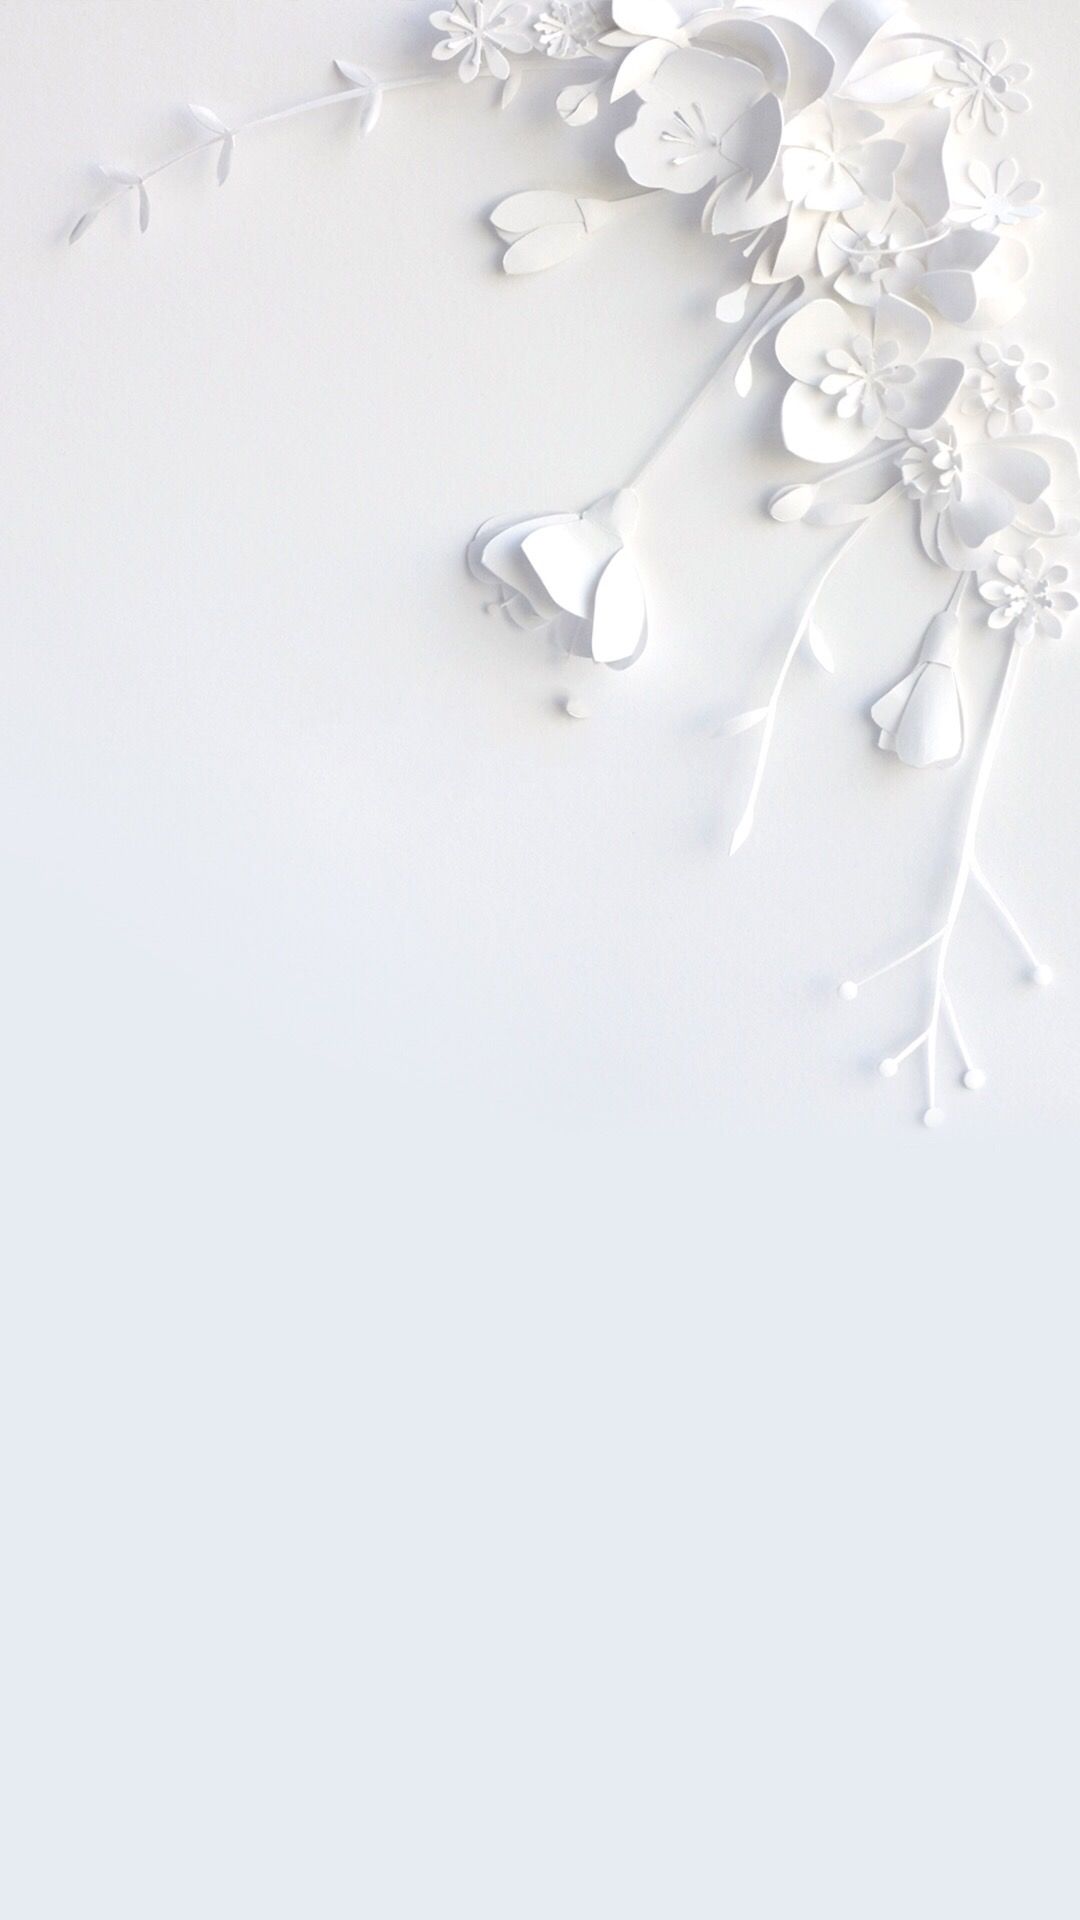 White Flower Wallpaper Free White Flower Background